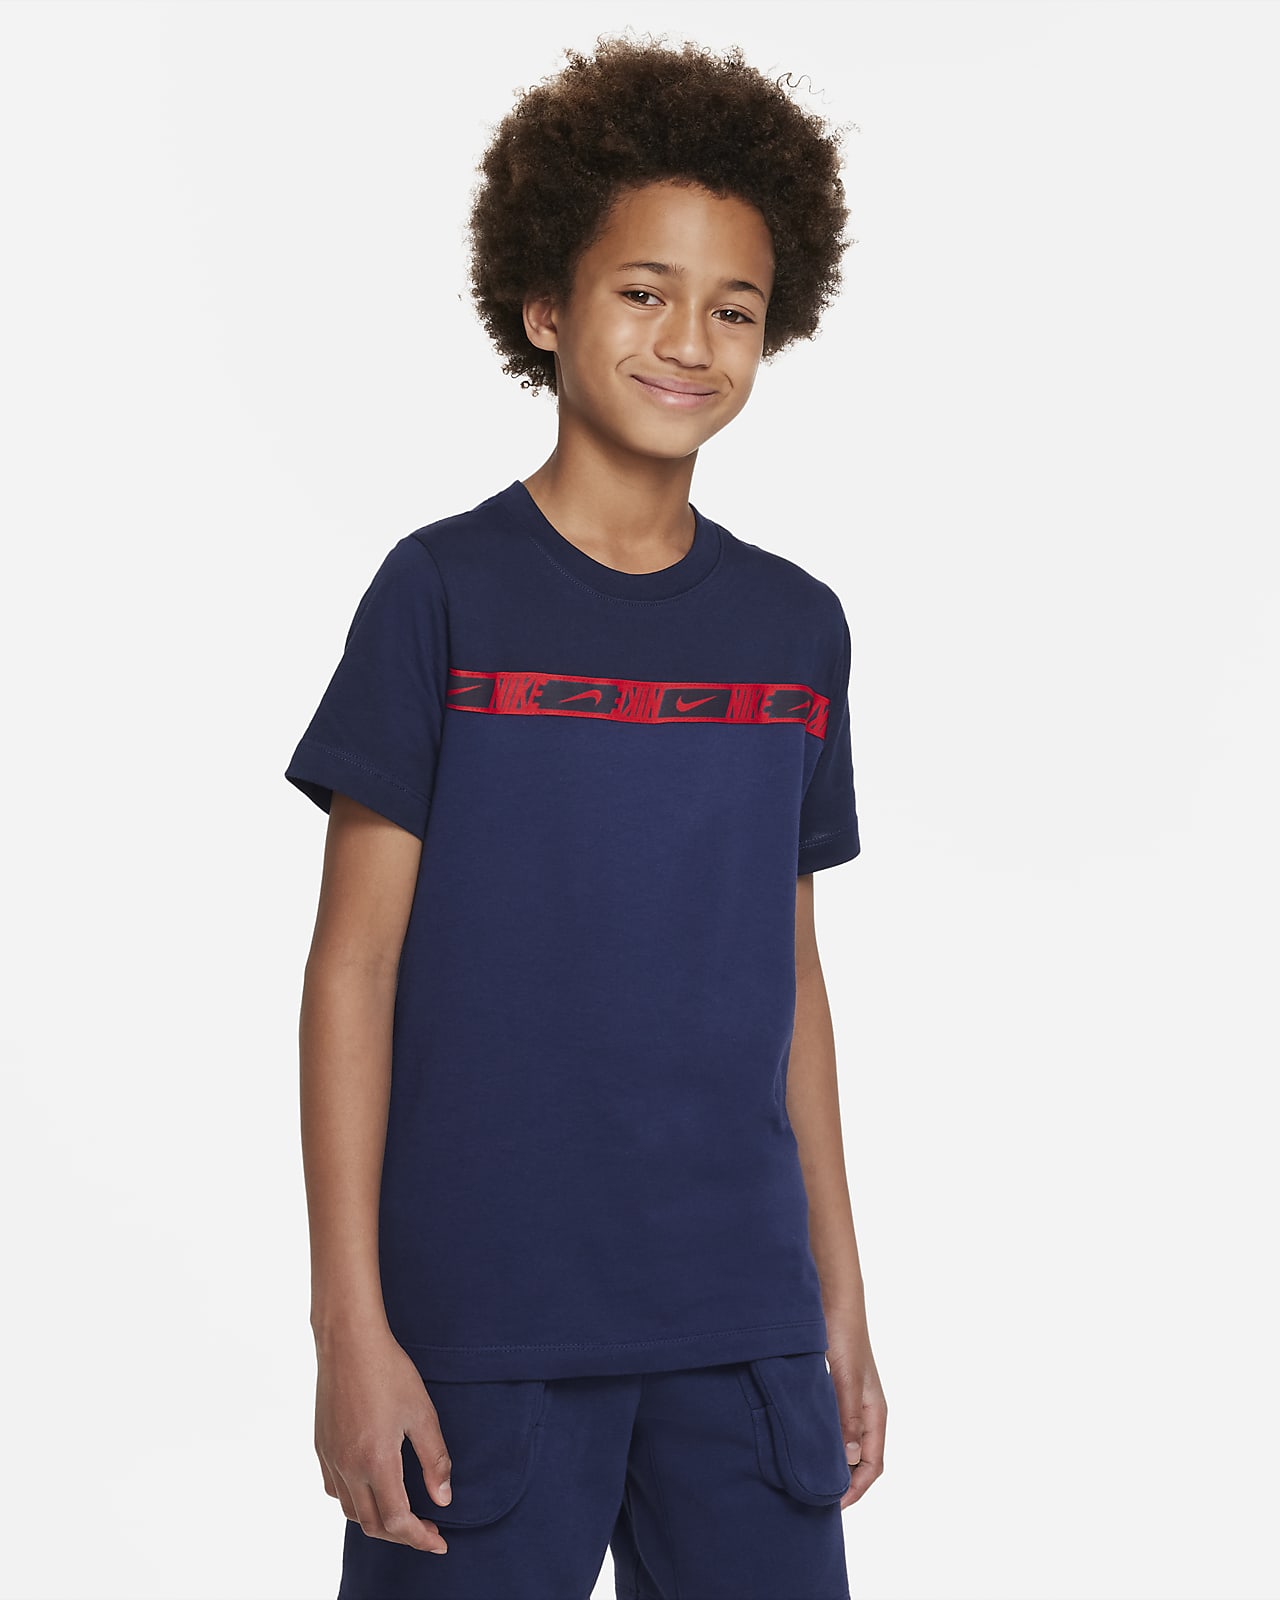 Nike Sportswear Older Kids' Short-Sleeve Top